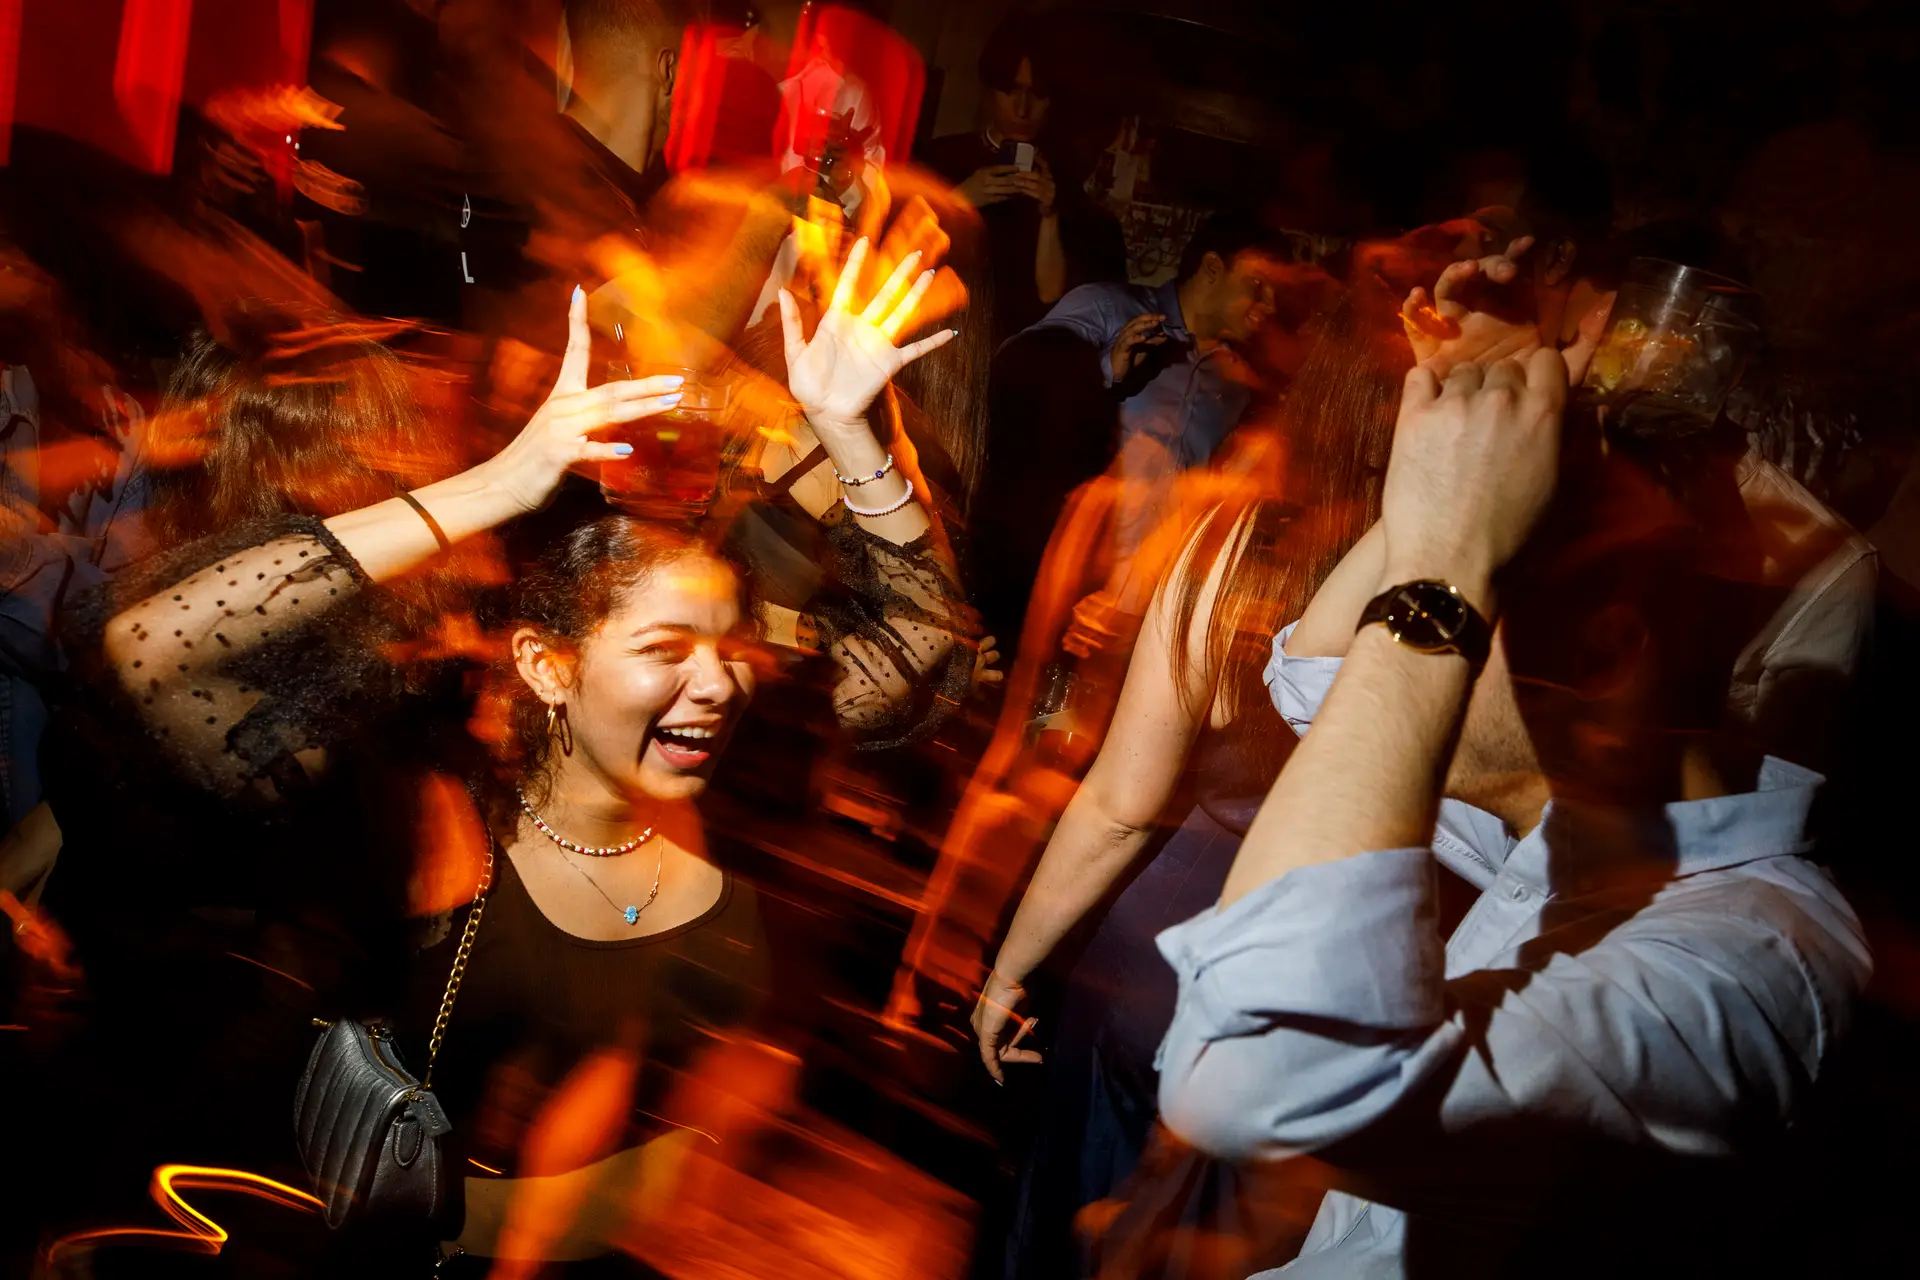 Dançar toda a noite por uma boa causa: a discoteca Amnesia, em Ibiza, doou 1 euro por cada 100 passos de dança